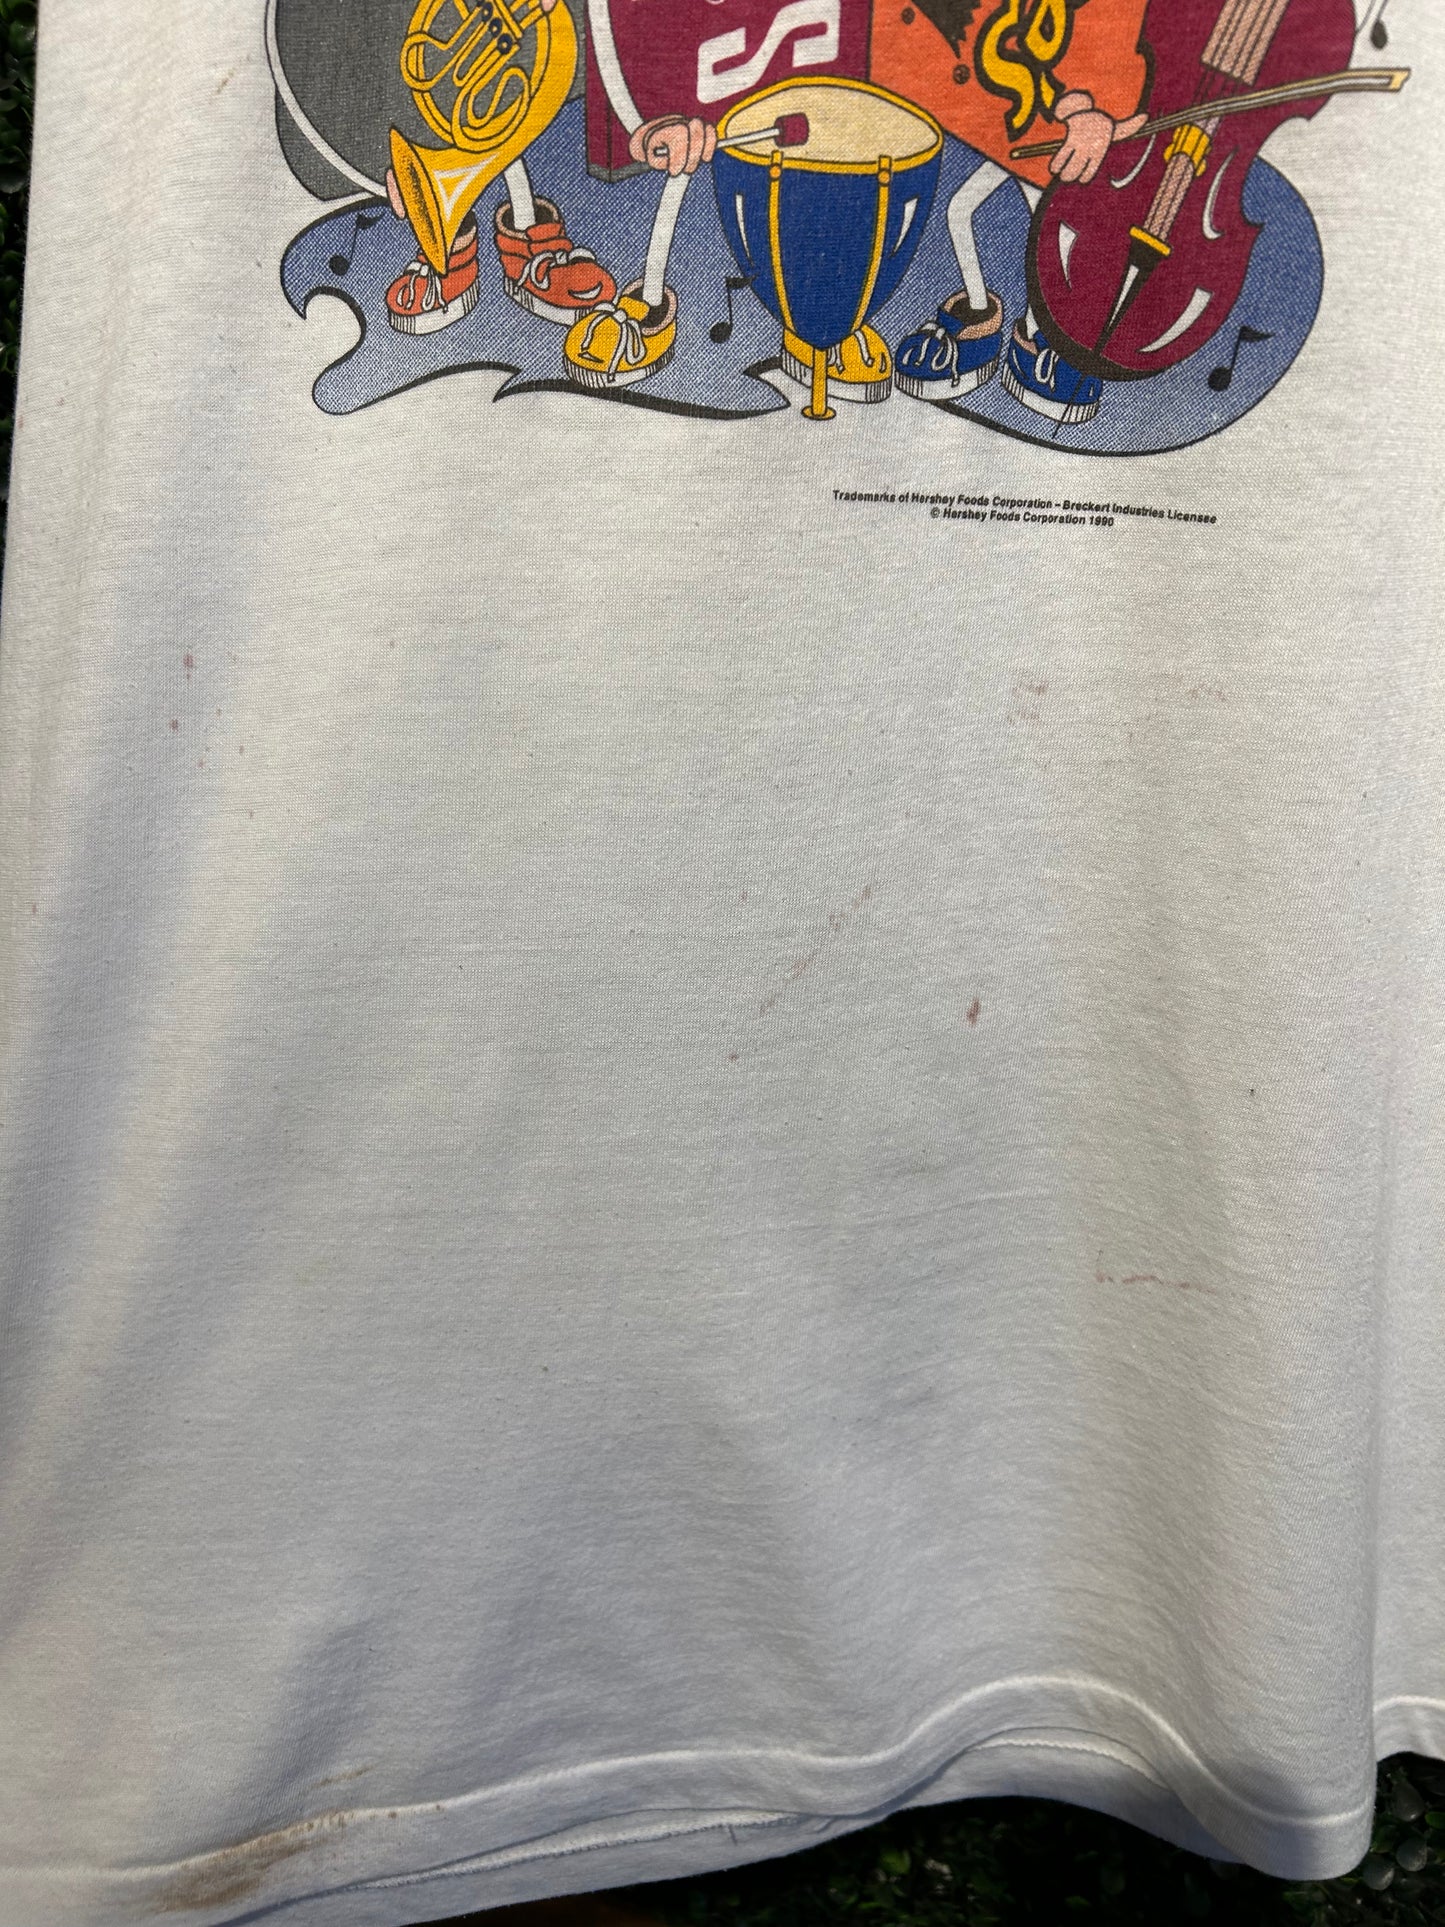 1990 Hershey Promo T-Shirt. Size Large